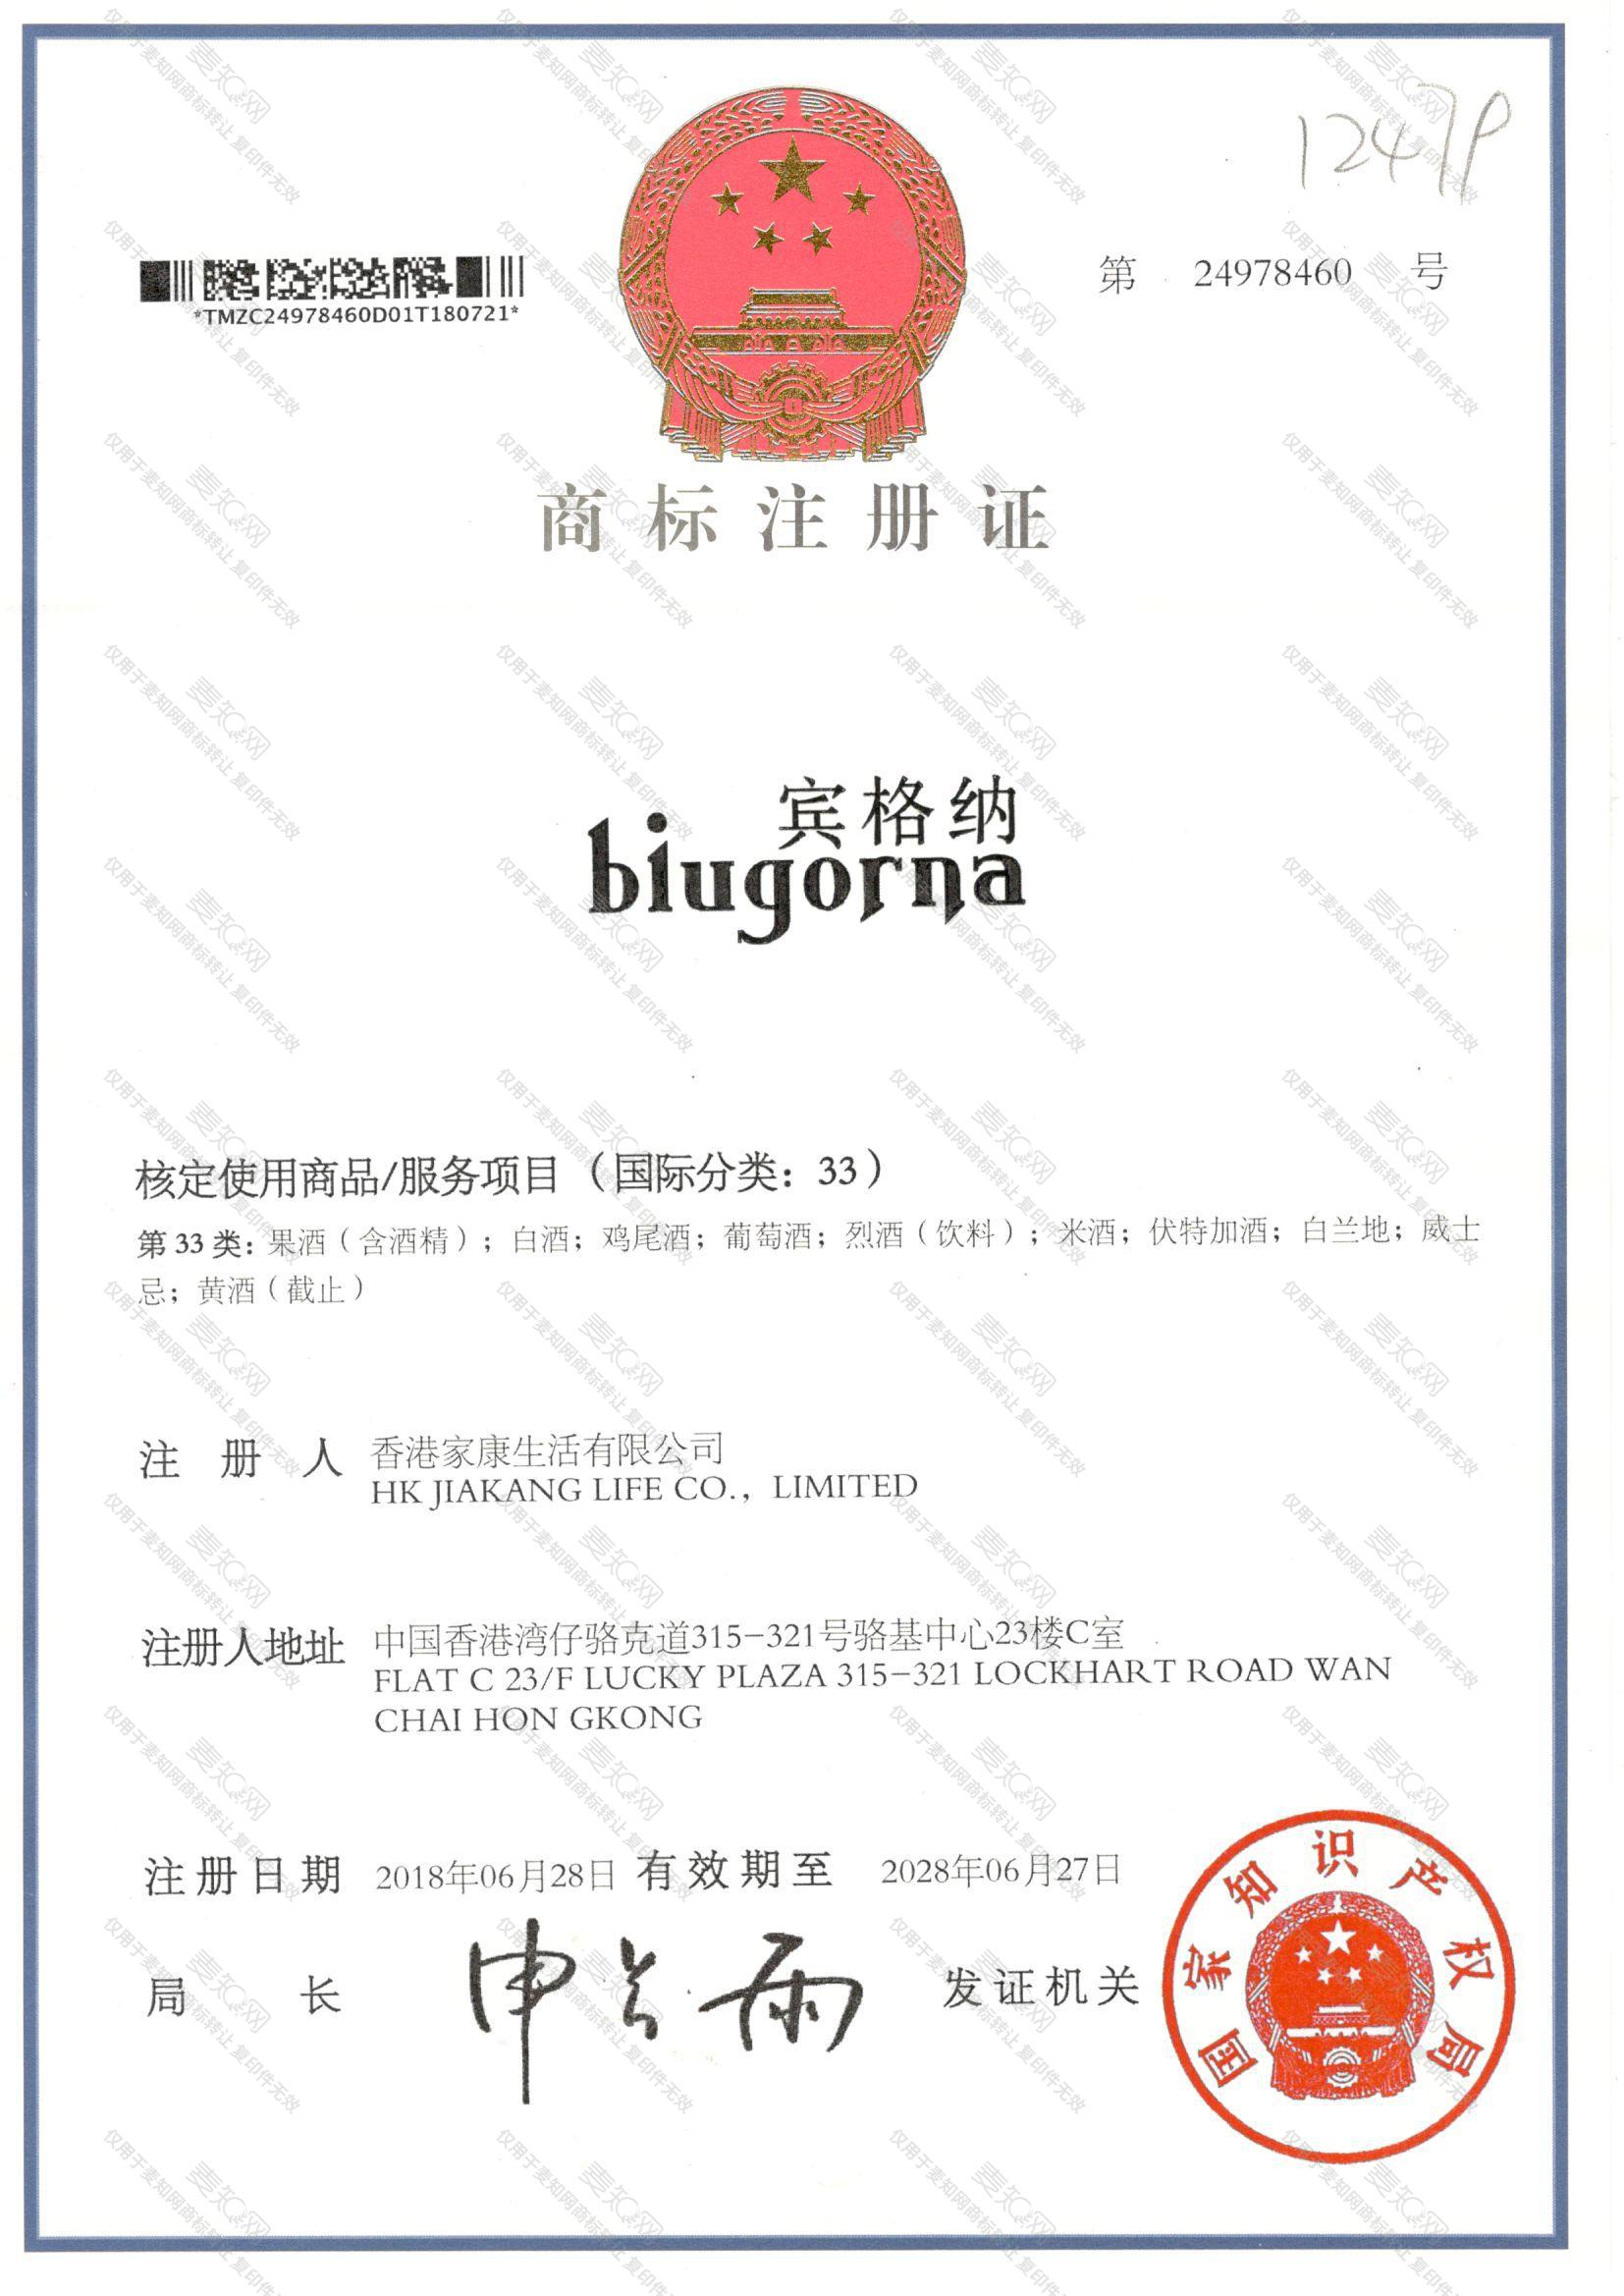 宾格纳 BIUGORNA注册证